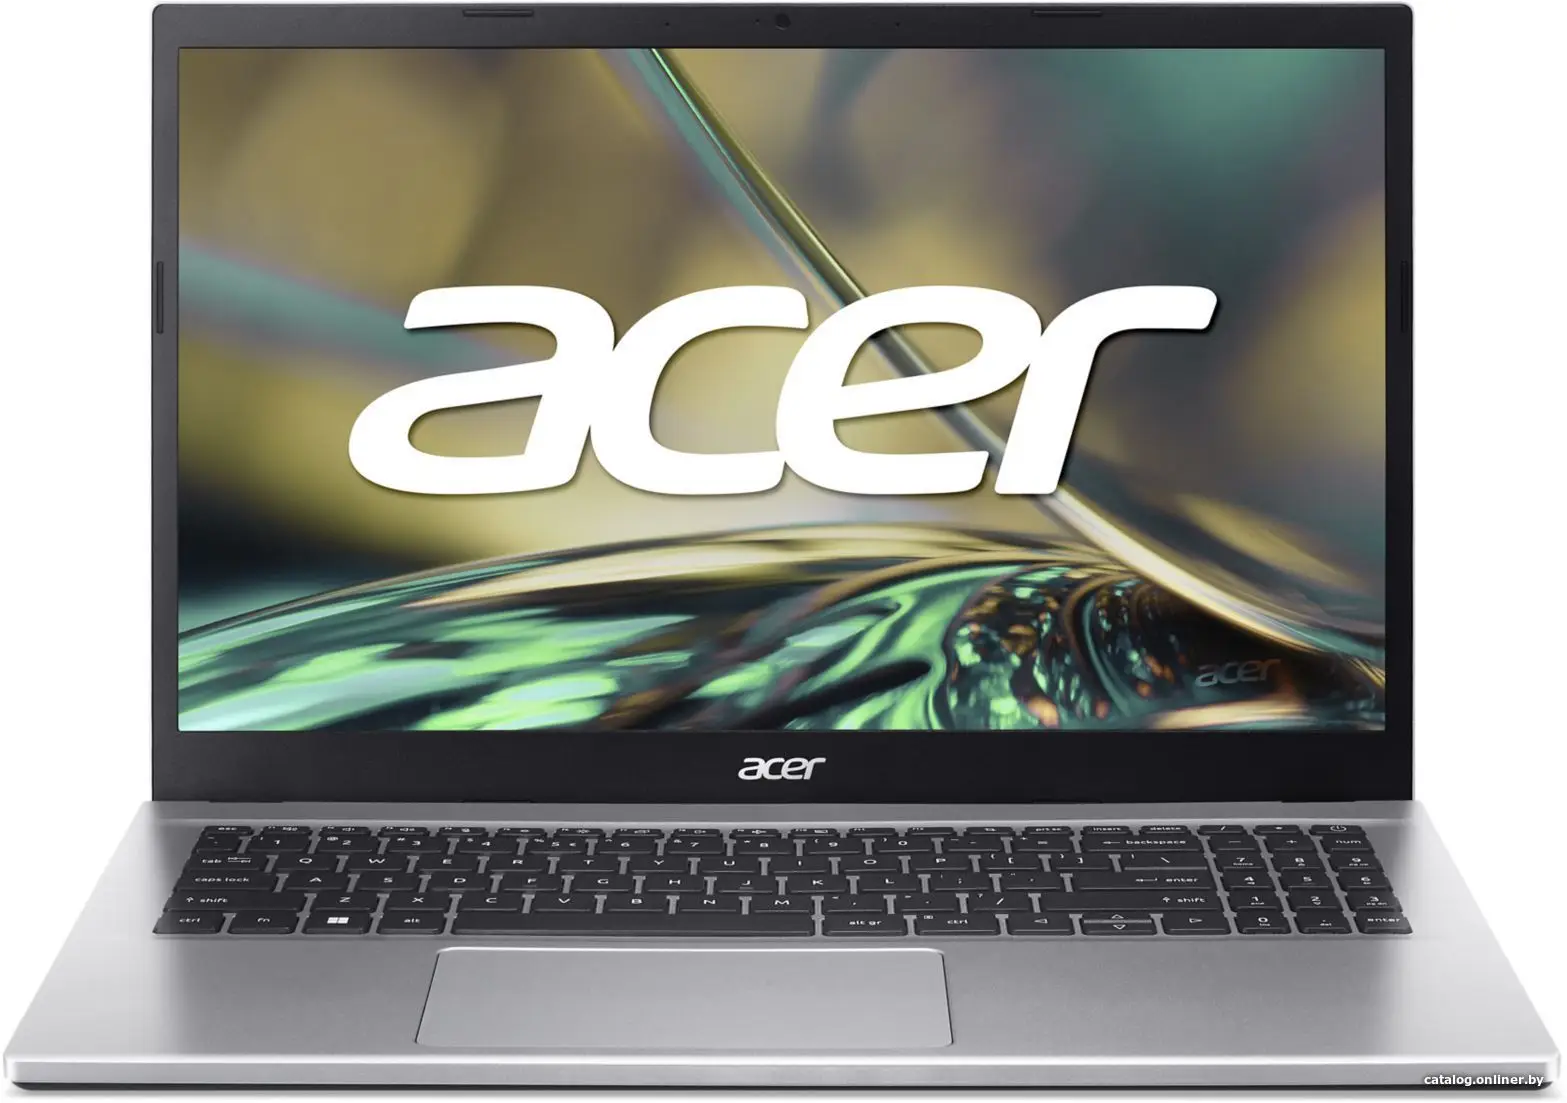 Купить Ноутбук Acer Aspire 3 A315-59-55XK NX.K6TEL.003, цена, опт и розница